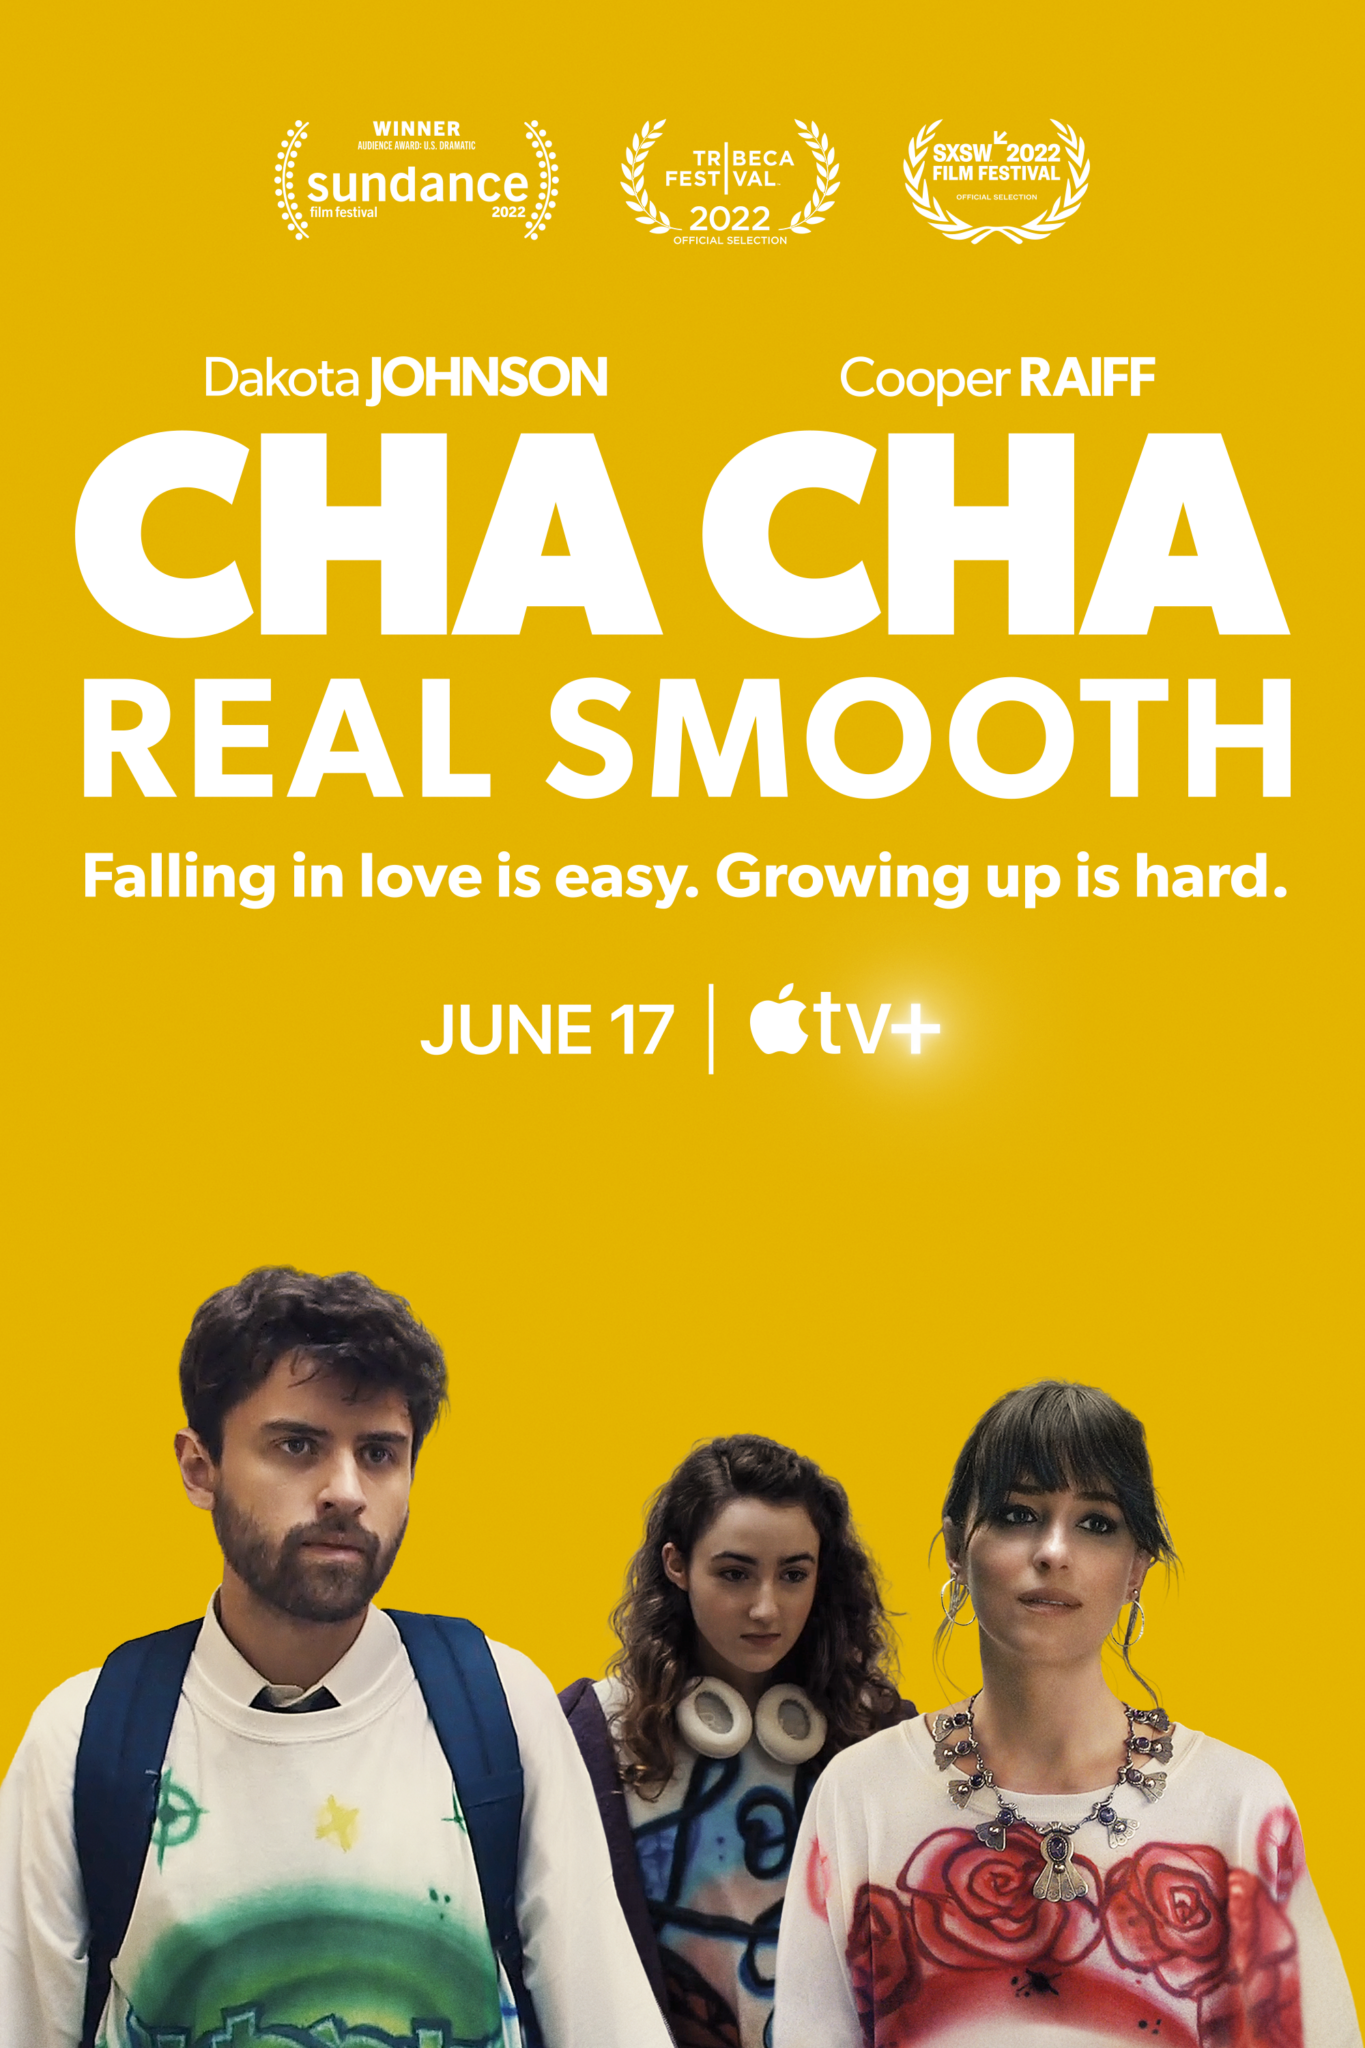 Das Plakat zeigt von links nach rechts Andrew, Lola und Domino vor einem gelben Hintergrund. Über den drei Personen prangt der Schriftzug "Cha Cha Real Smooth"